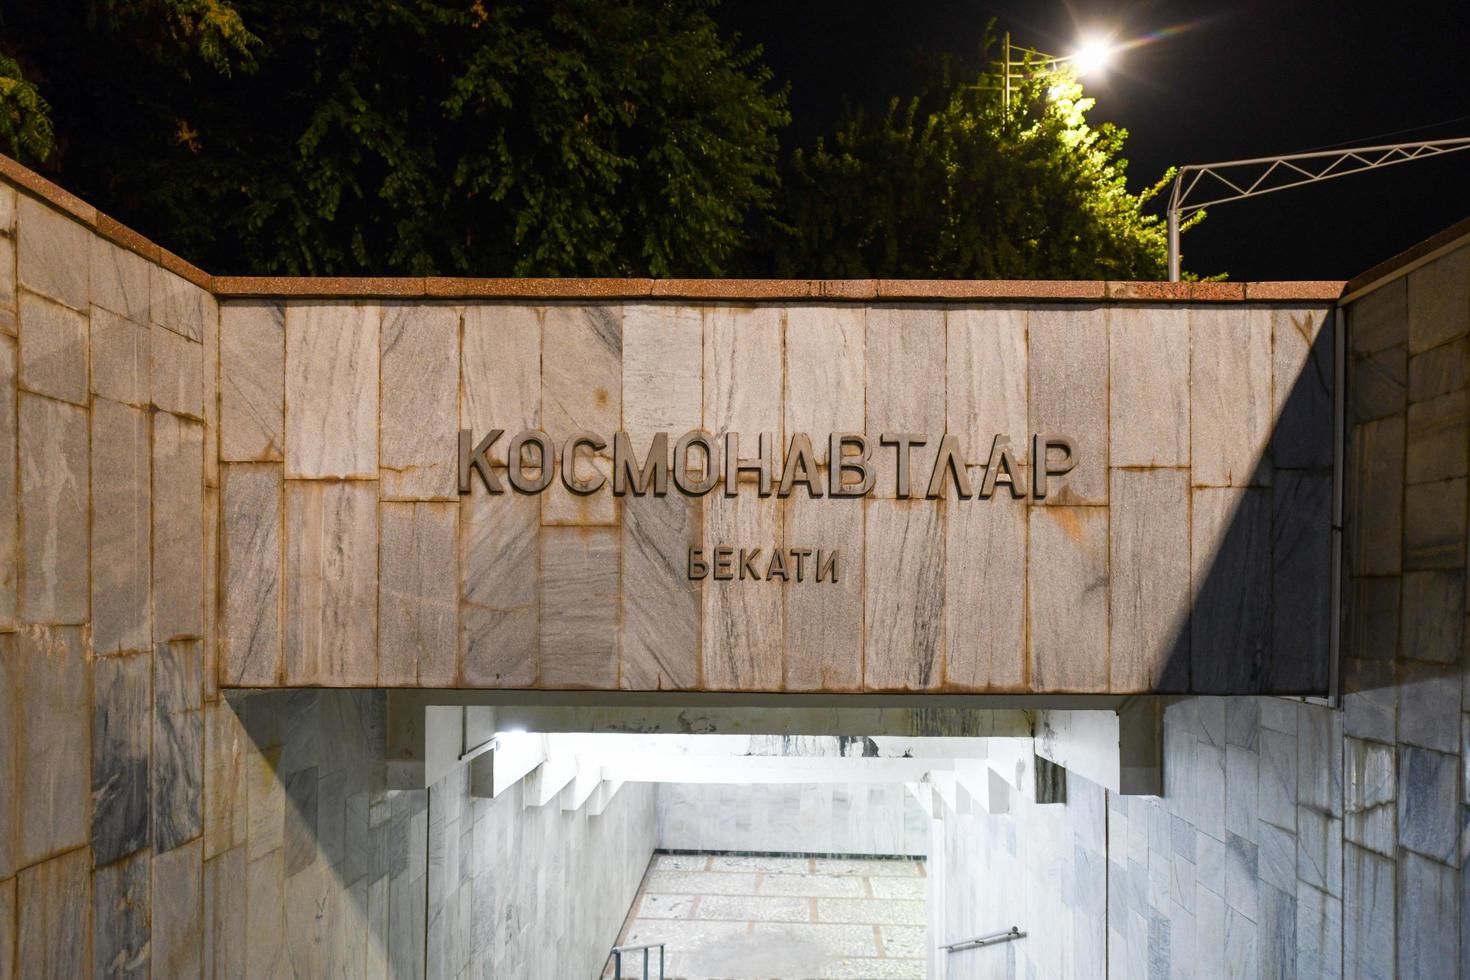 Tashkent, Uzbekistan - luglio 8, 2019 - kosmonavtlar la metropolitana stazione, un' a tema del programma spaziale stazione di il compito la metropolitana su ozbekiston linea nel Tashkent, Uzbekistan. foto